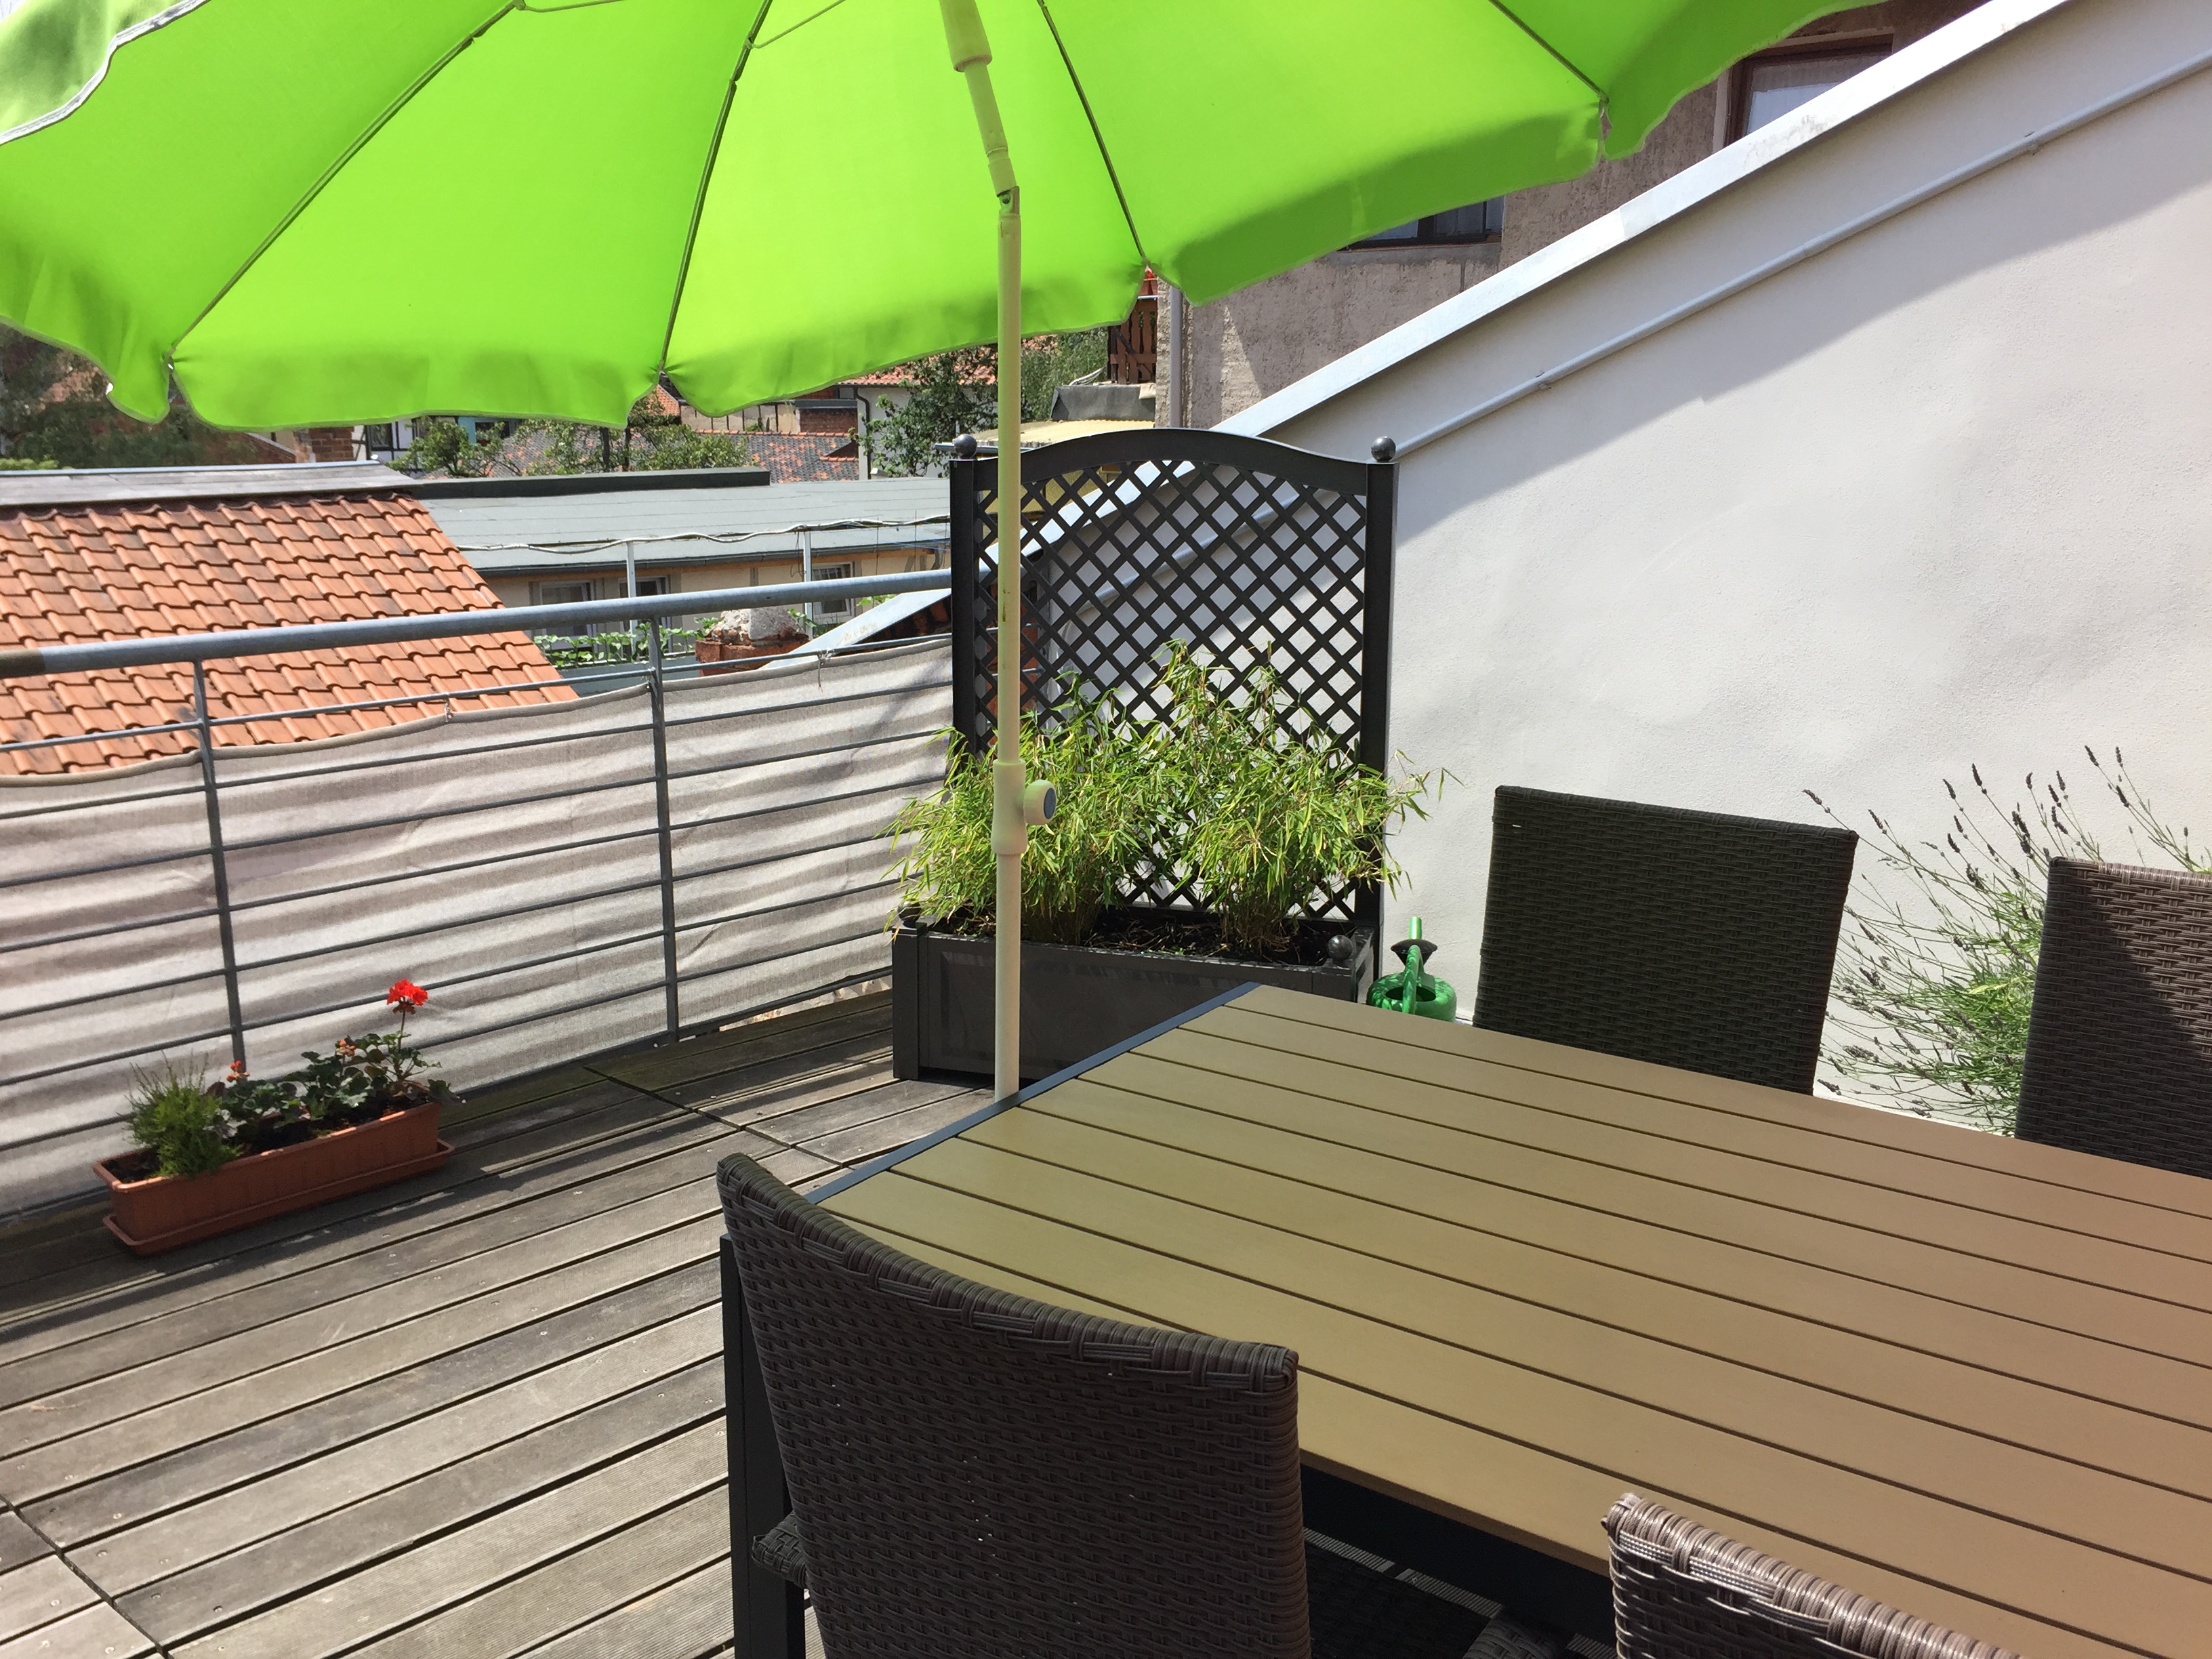 Dachterrasse mit Tisch und Stühlen, Sonnenschirm und Blumenkübeln